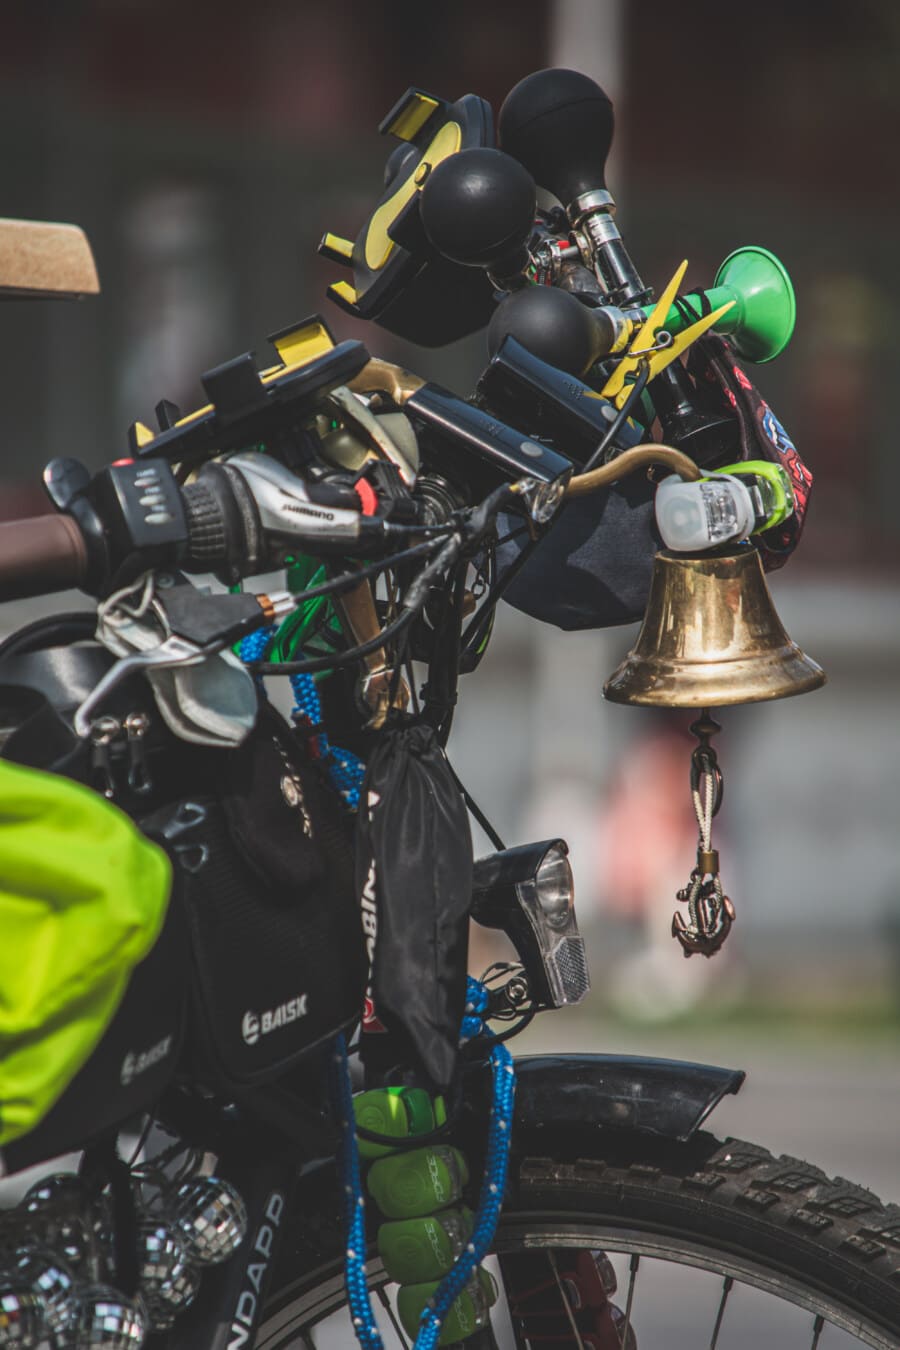 zvono, upravljač, mnogi, stvari, bicikl, guma, prednje svjetlo, na otvorenom, rekreacija, uređaj